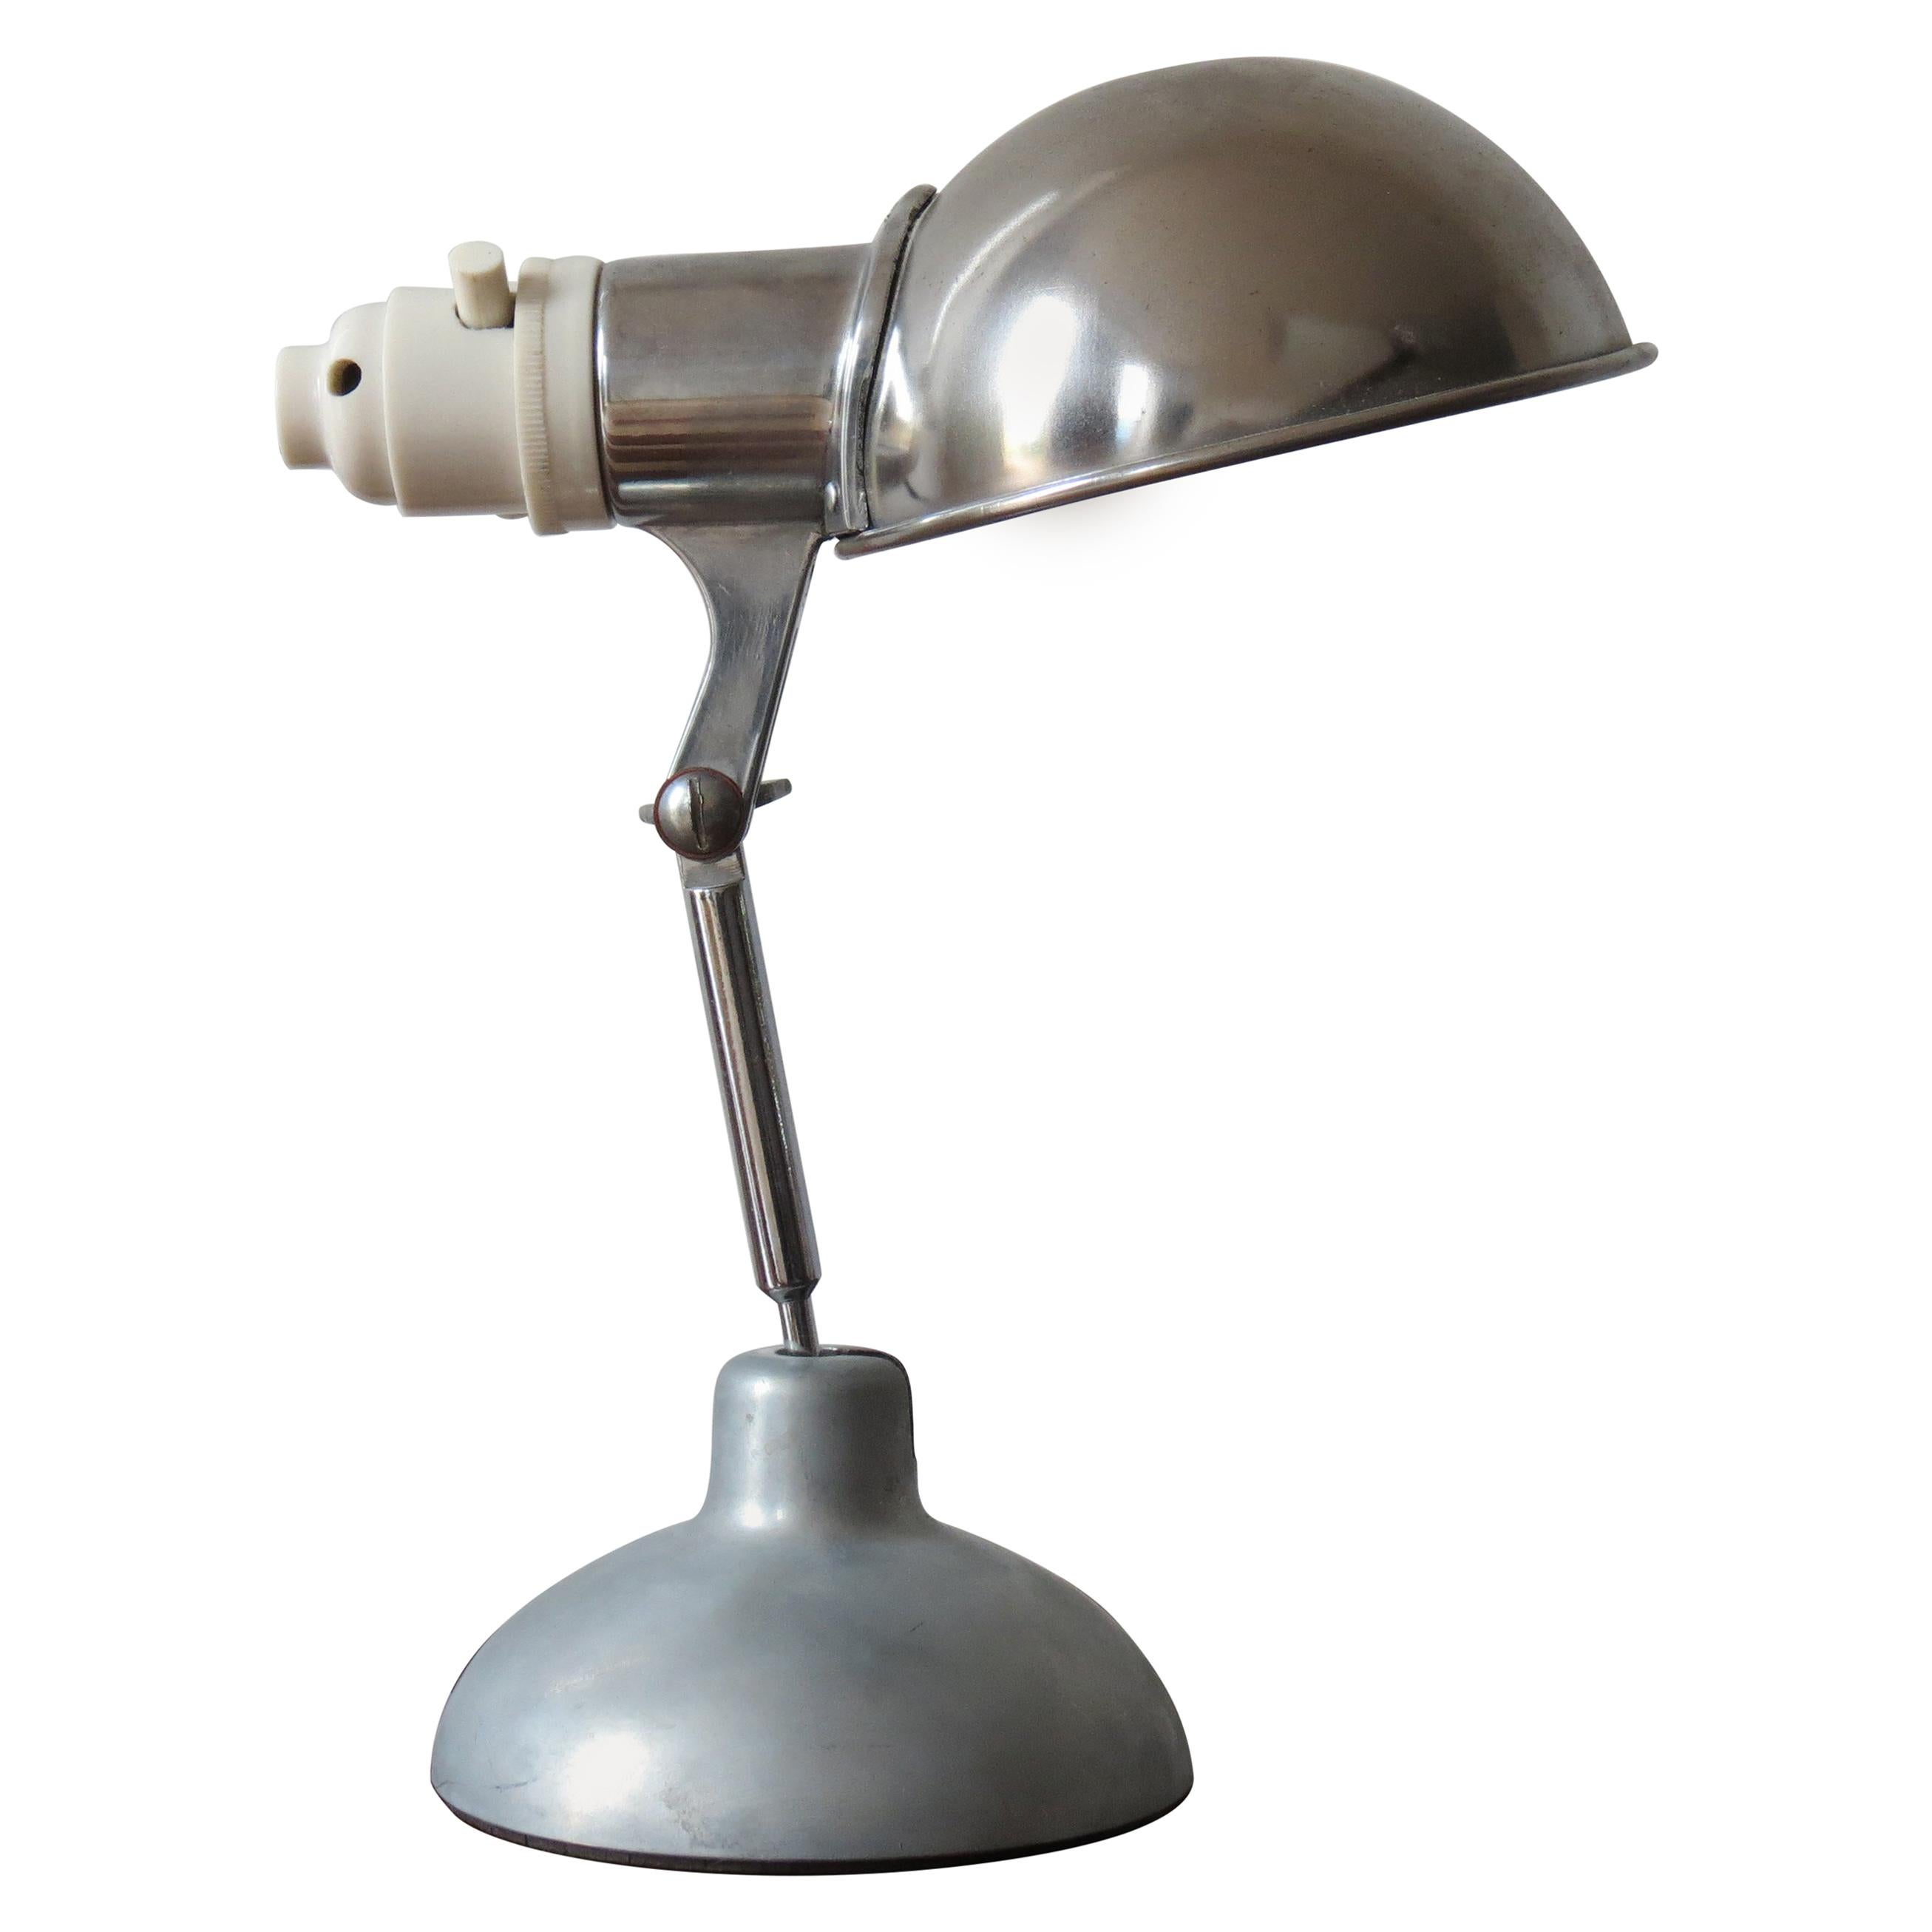 1950s Industrial Metek Metal Travelling Lamp Aluminium Folding Adjustable Lamp W